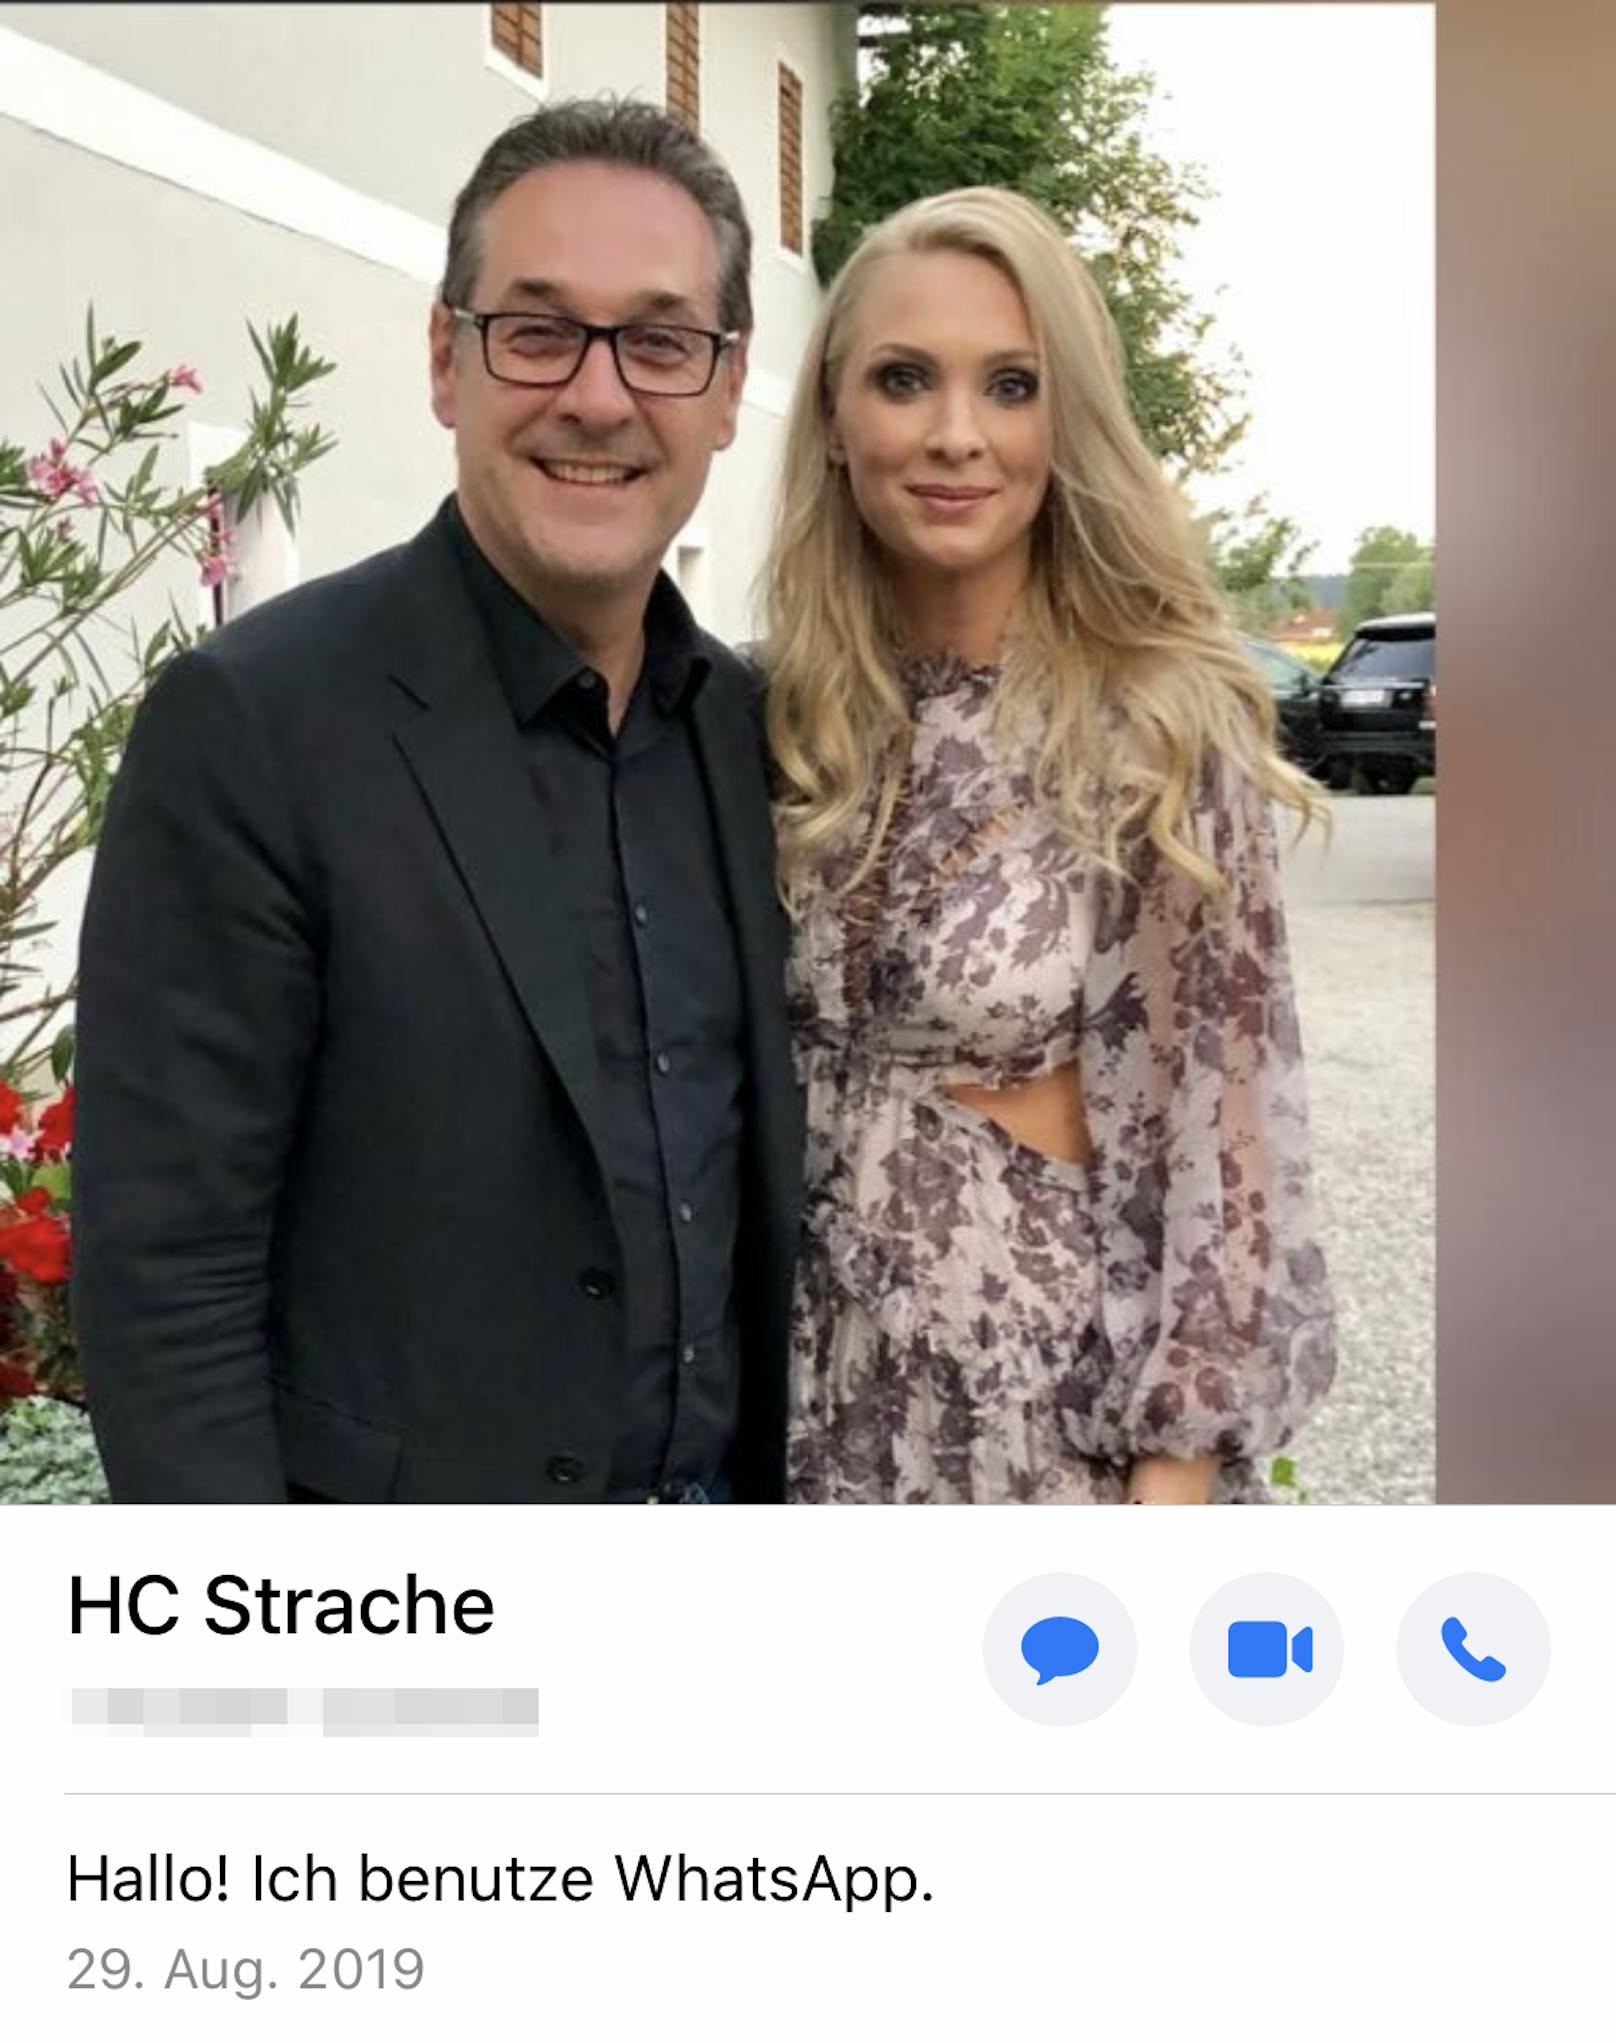 Das Whatsapp-Bild von HC Strache zeigt das Politiker-Paar selig vereint.